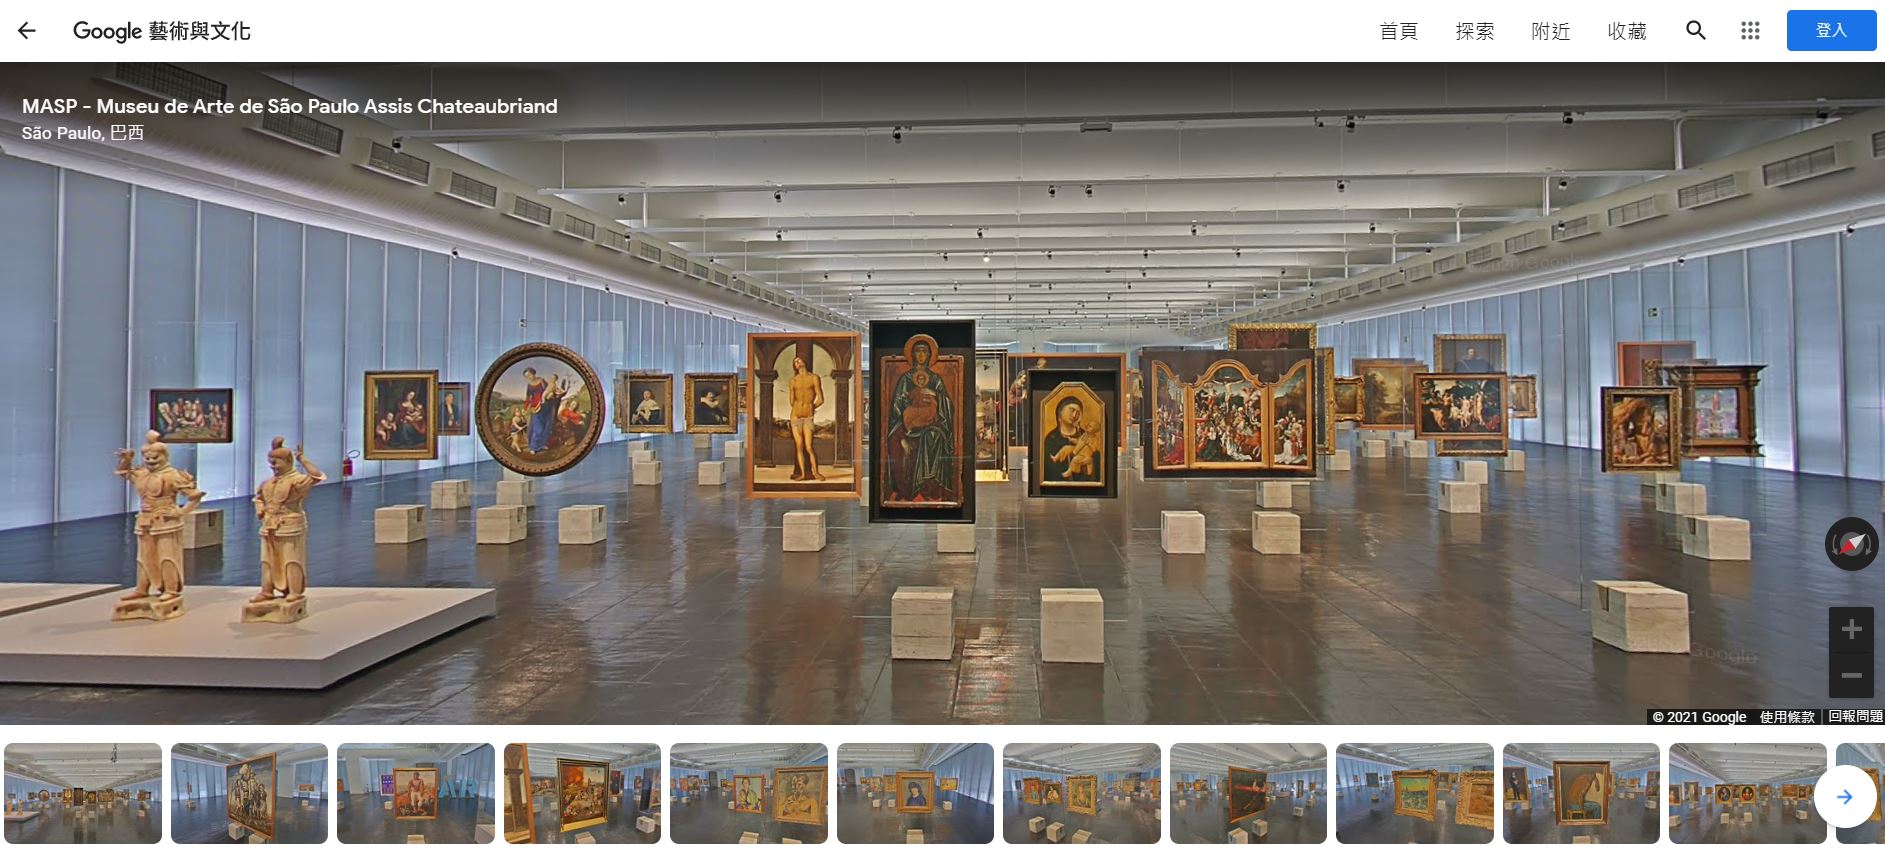 巴西聖保羅藝術博物館,MASP,聖保羅藝術博物館,Google Arts & Culture,Google 藝術與文化,虛擬實境美術館,線上博物館,線上展覽,線上美術館